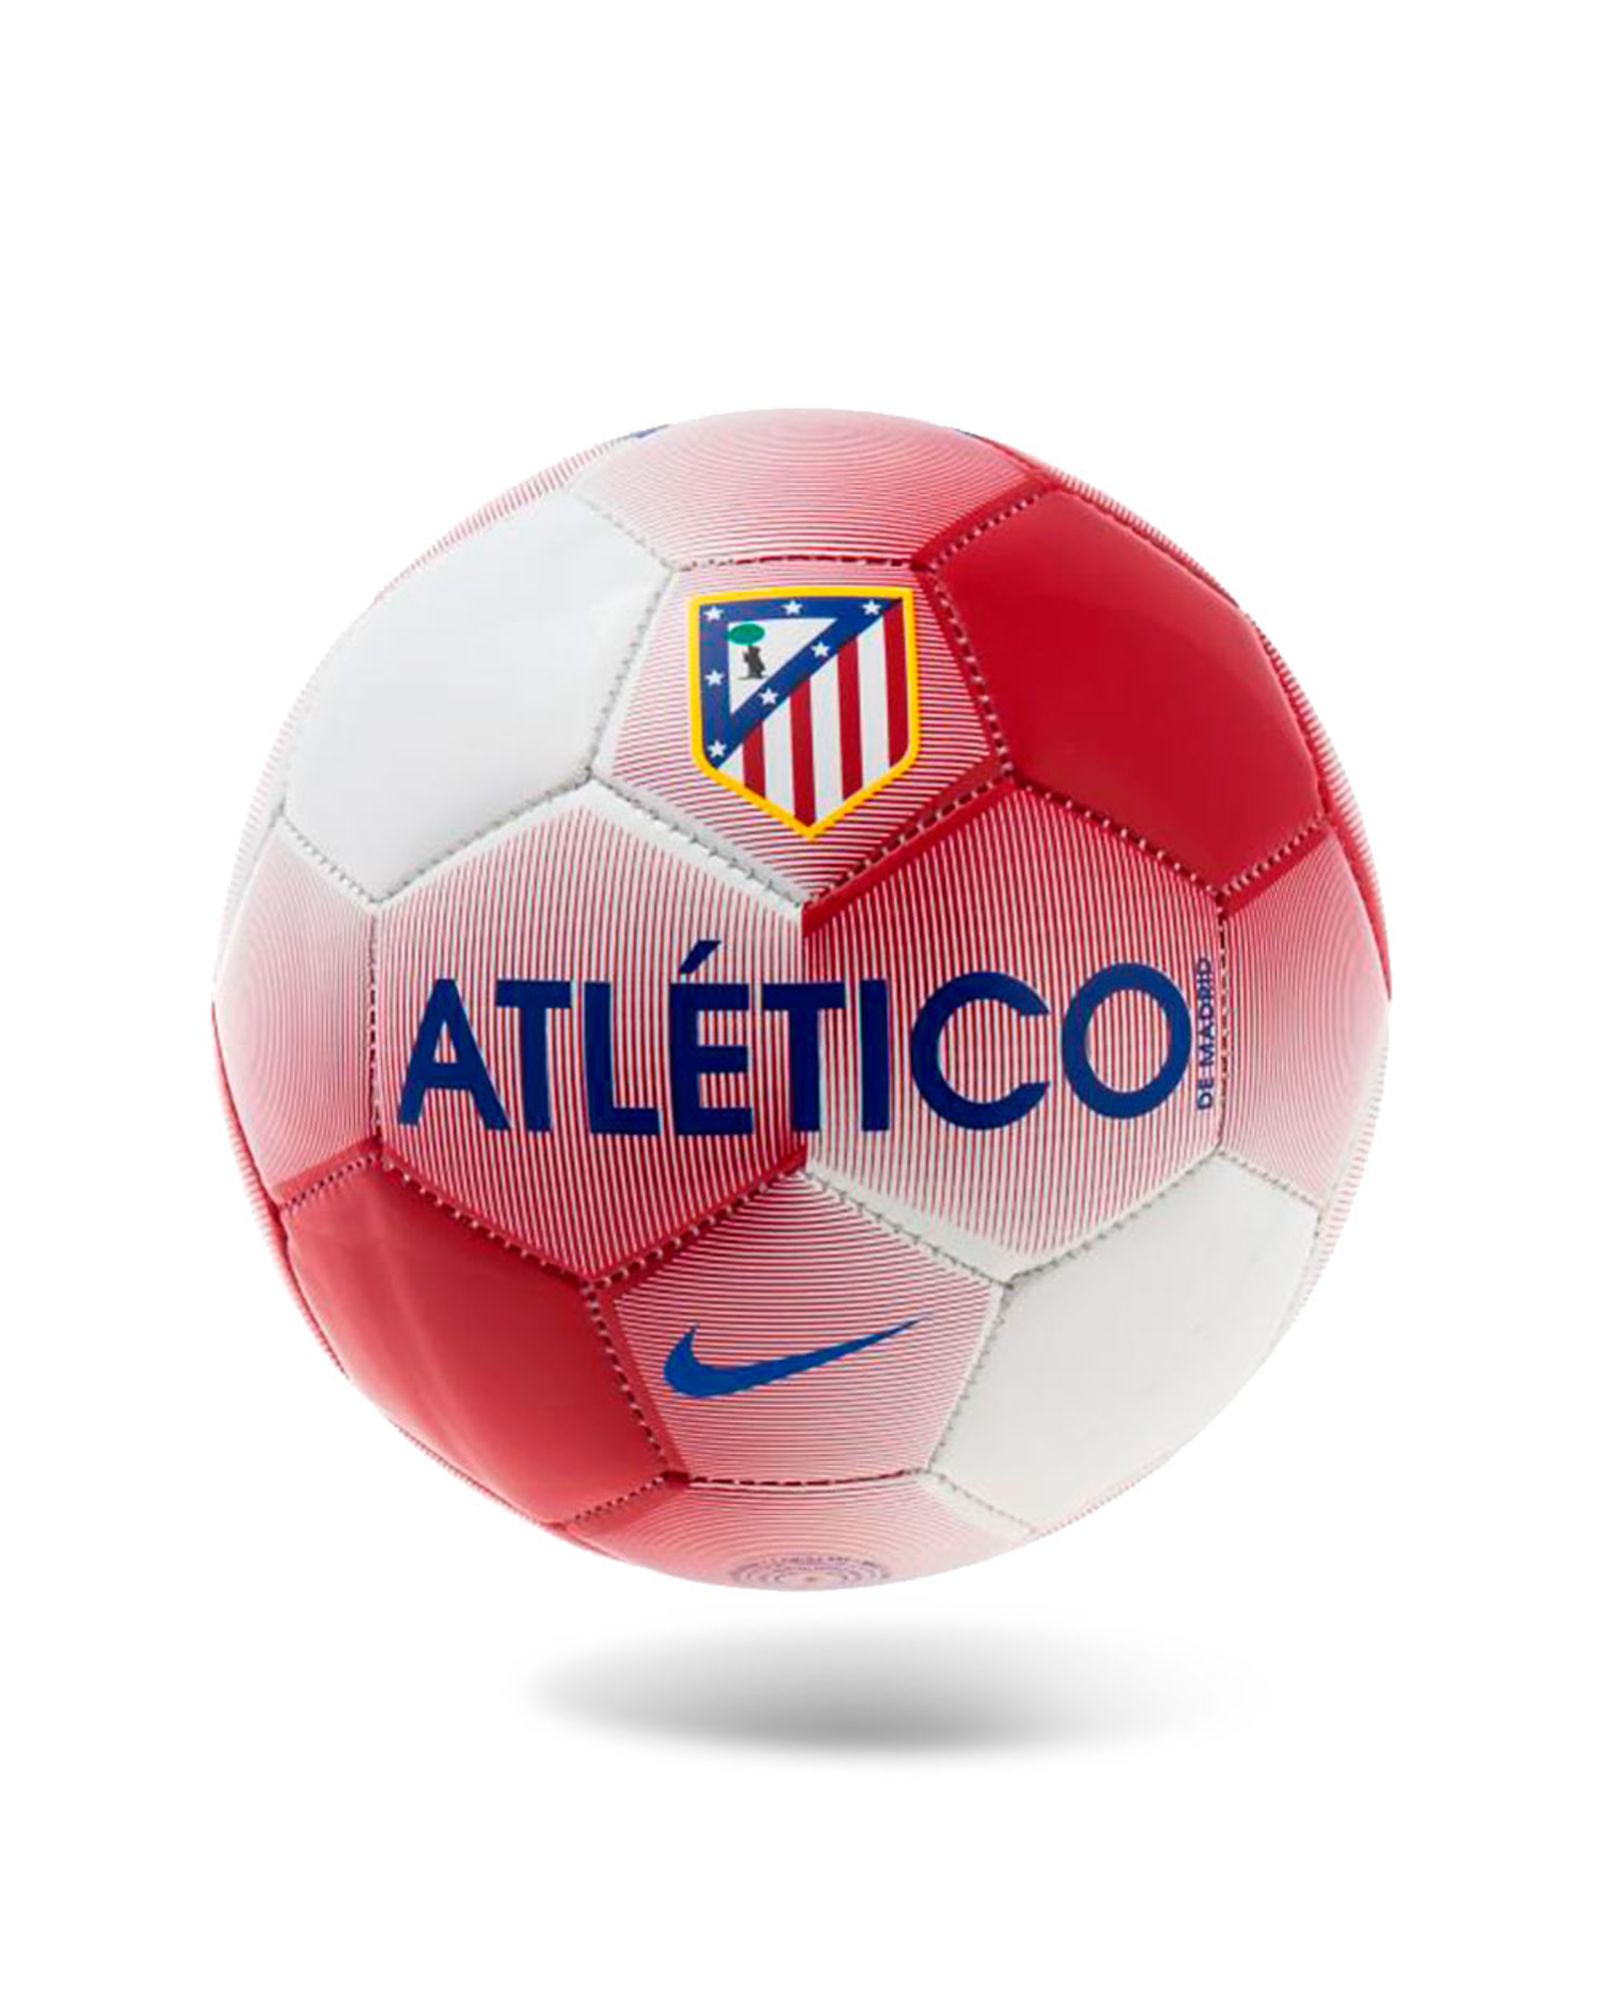 Mini Balón del Atlético de Madrid 2016/2017 Prestige Rojo Blanco - Fútbol Factory